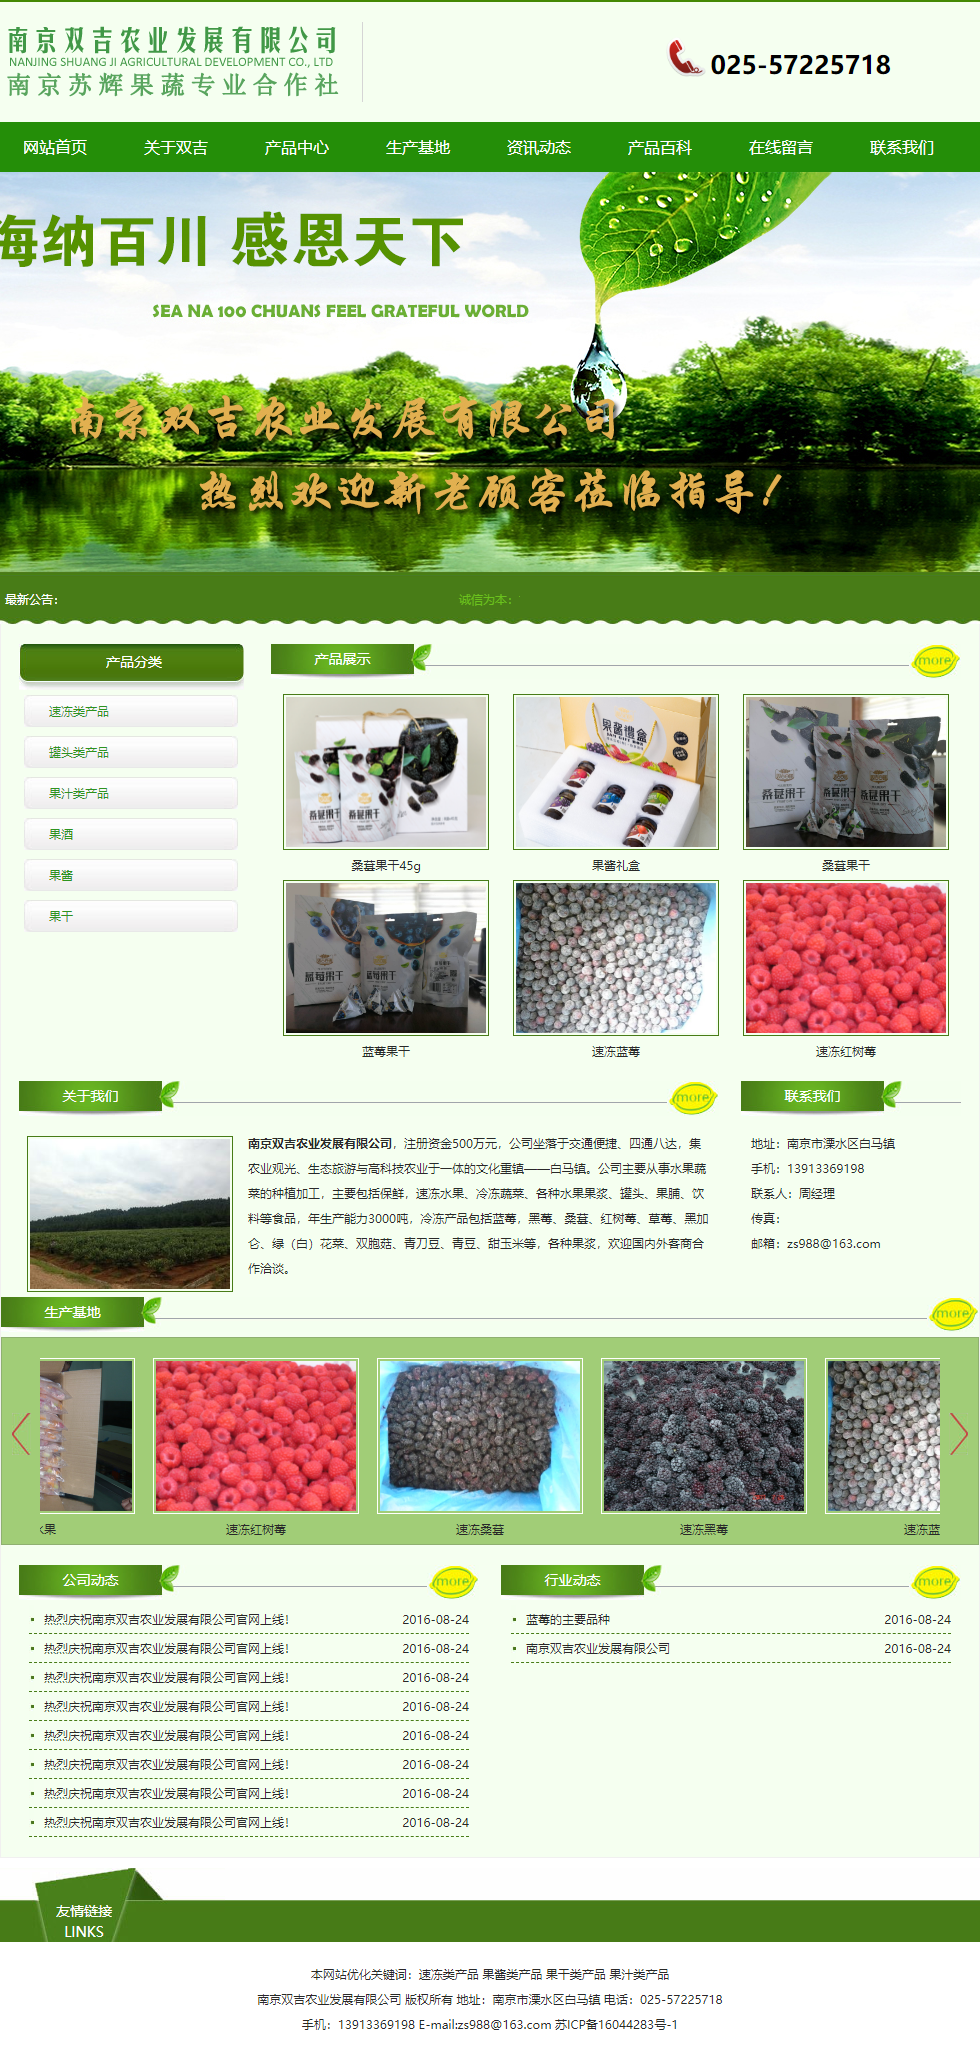 南京双吉农业发展有限公司网站案例